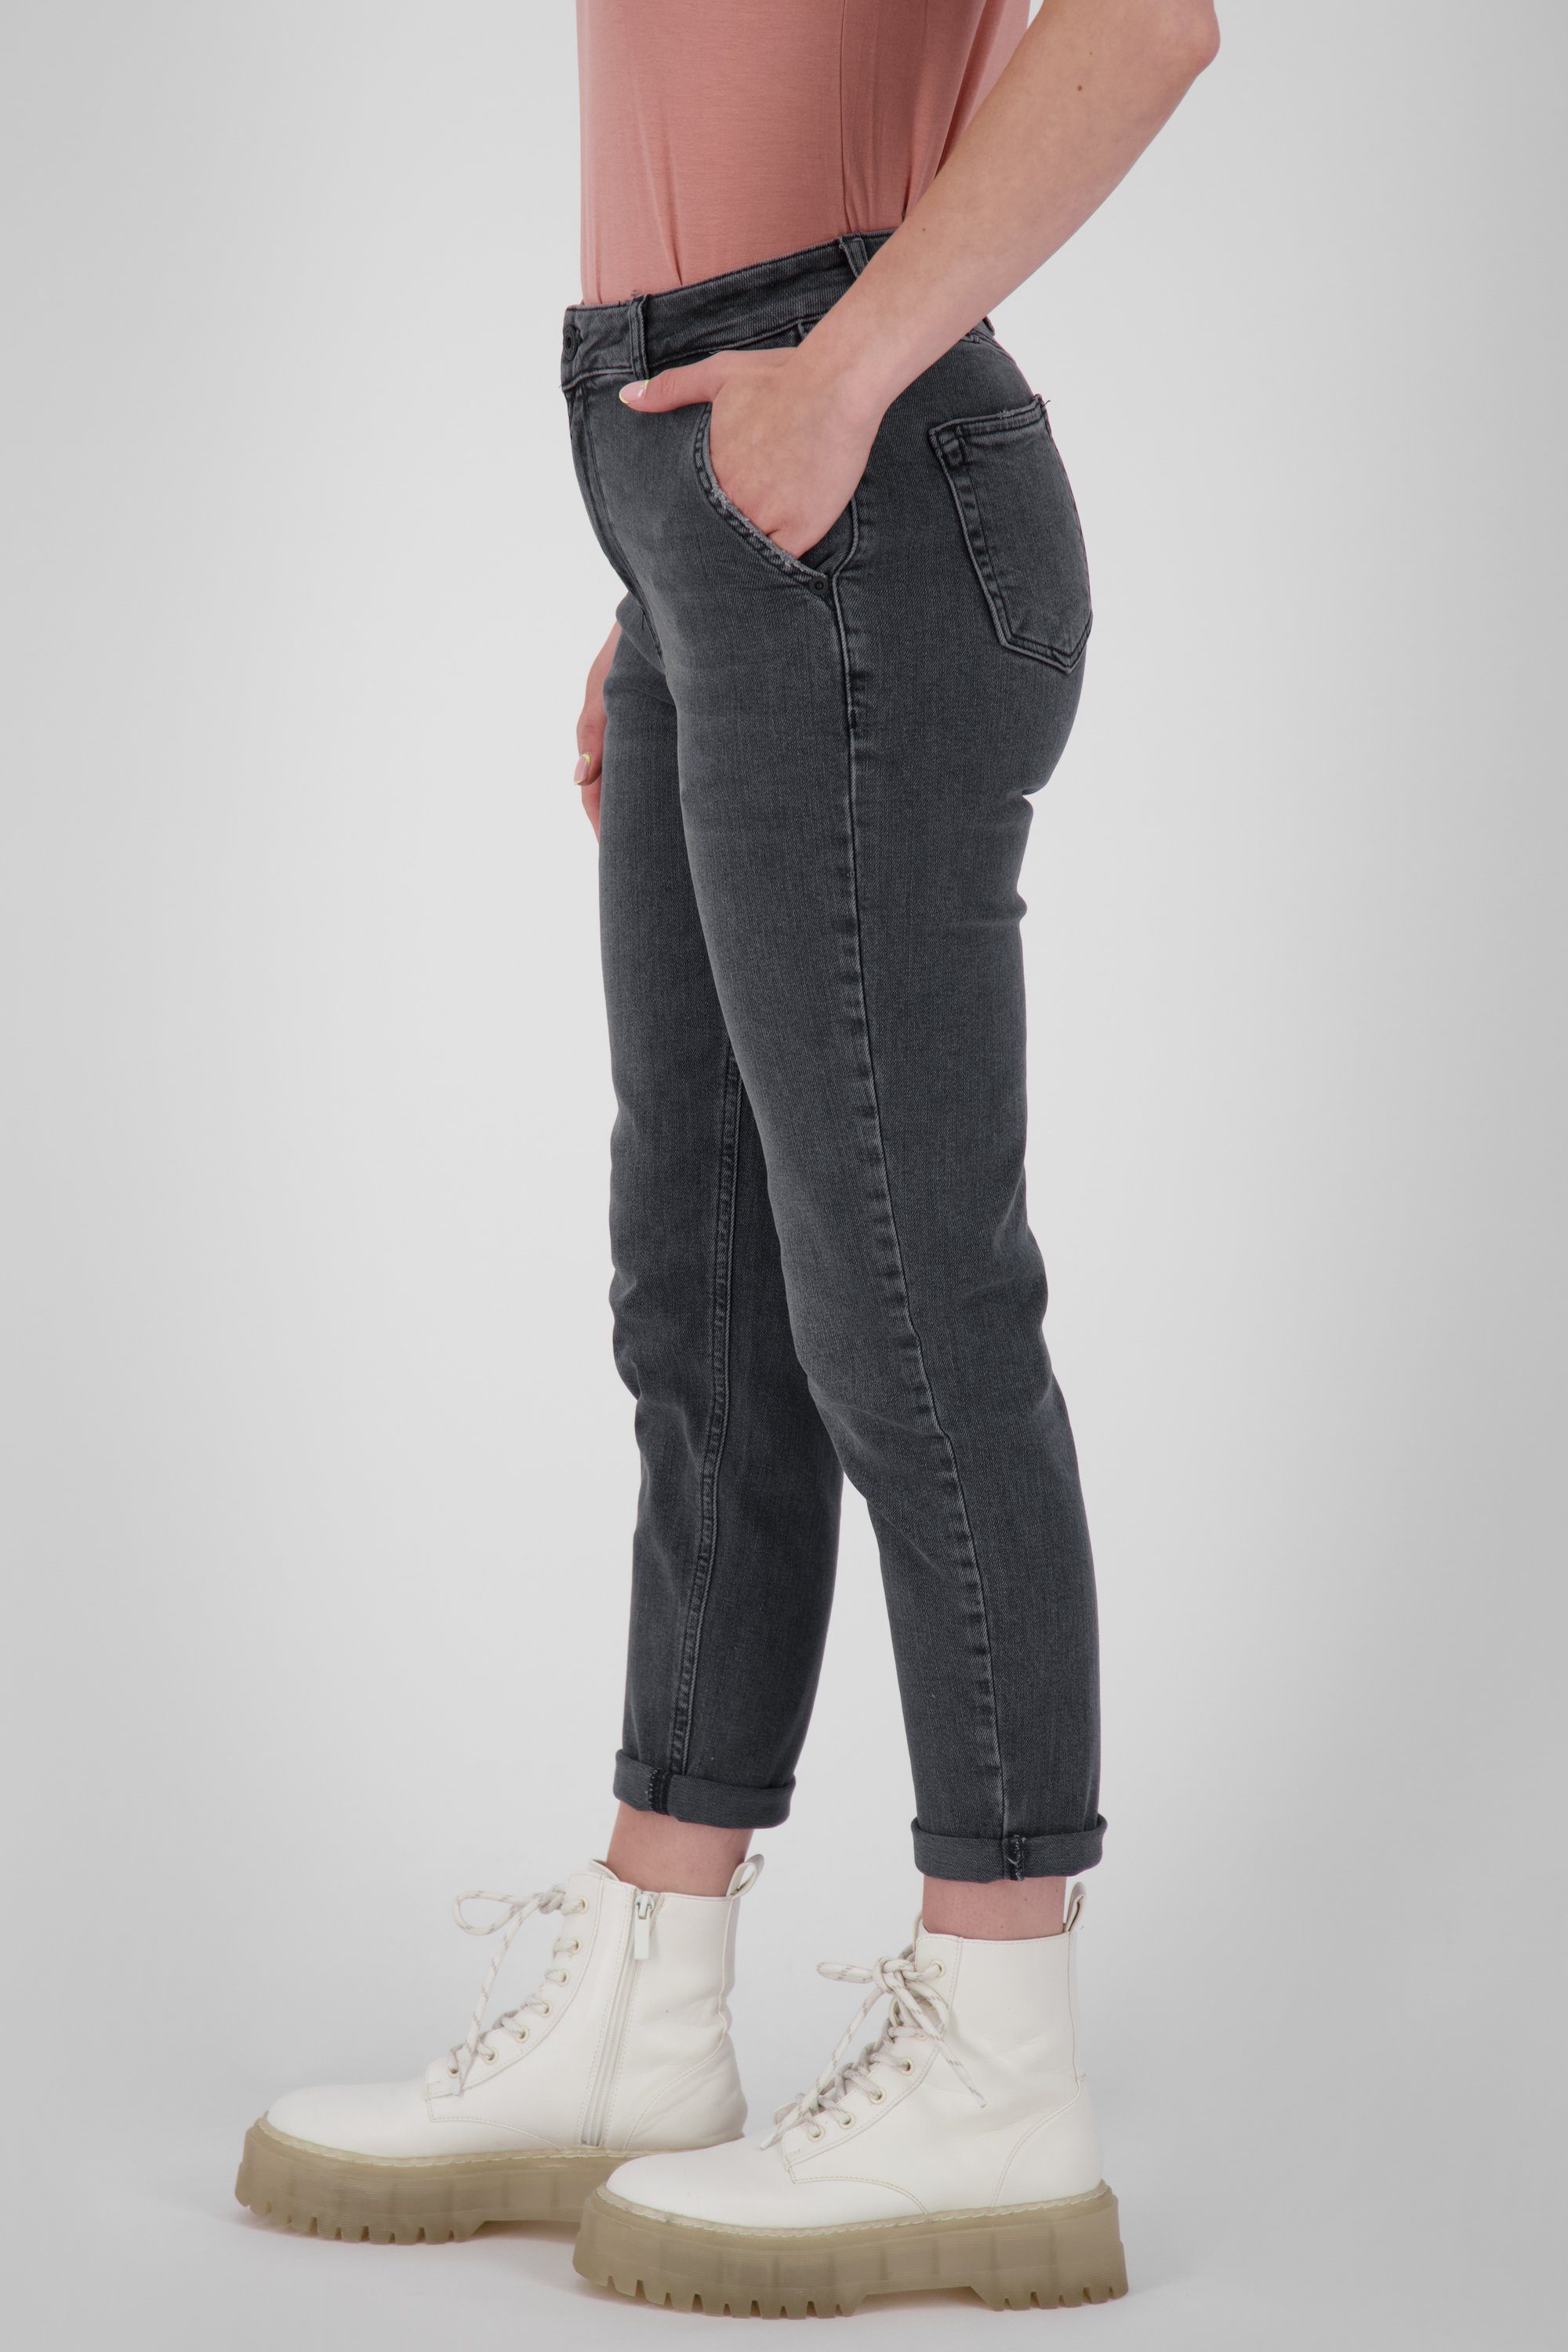 Alife & Kickin DNM Jeanshose Mom-Jeans Damen Pants Q LaureenAK